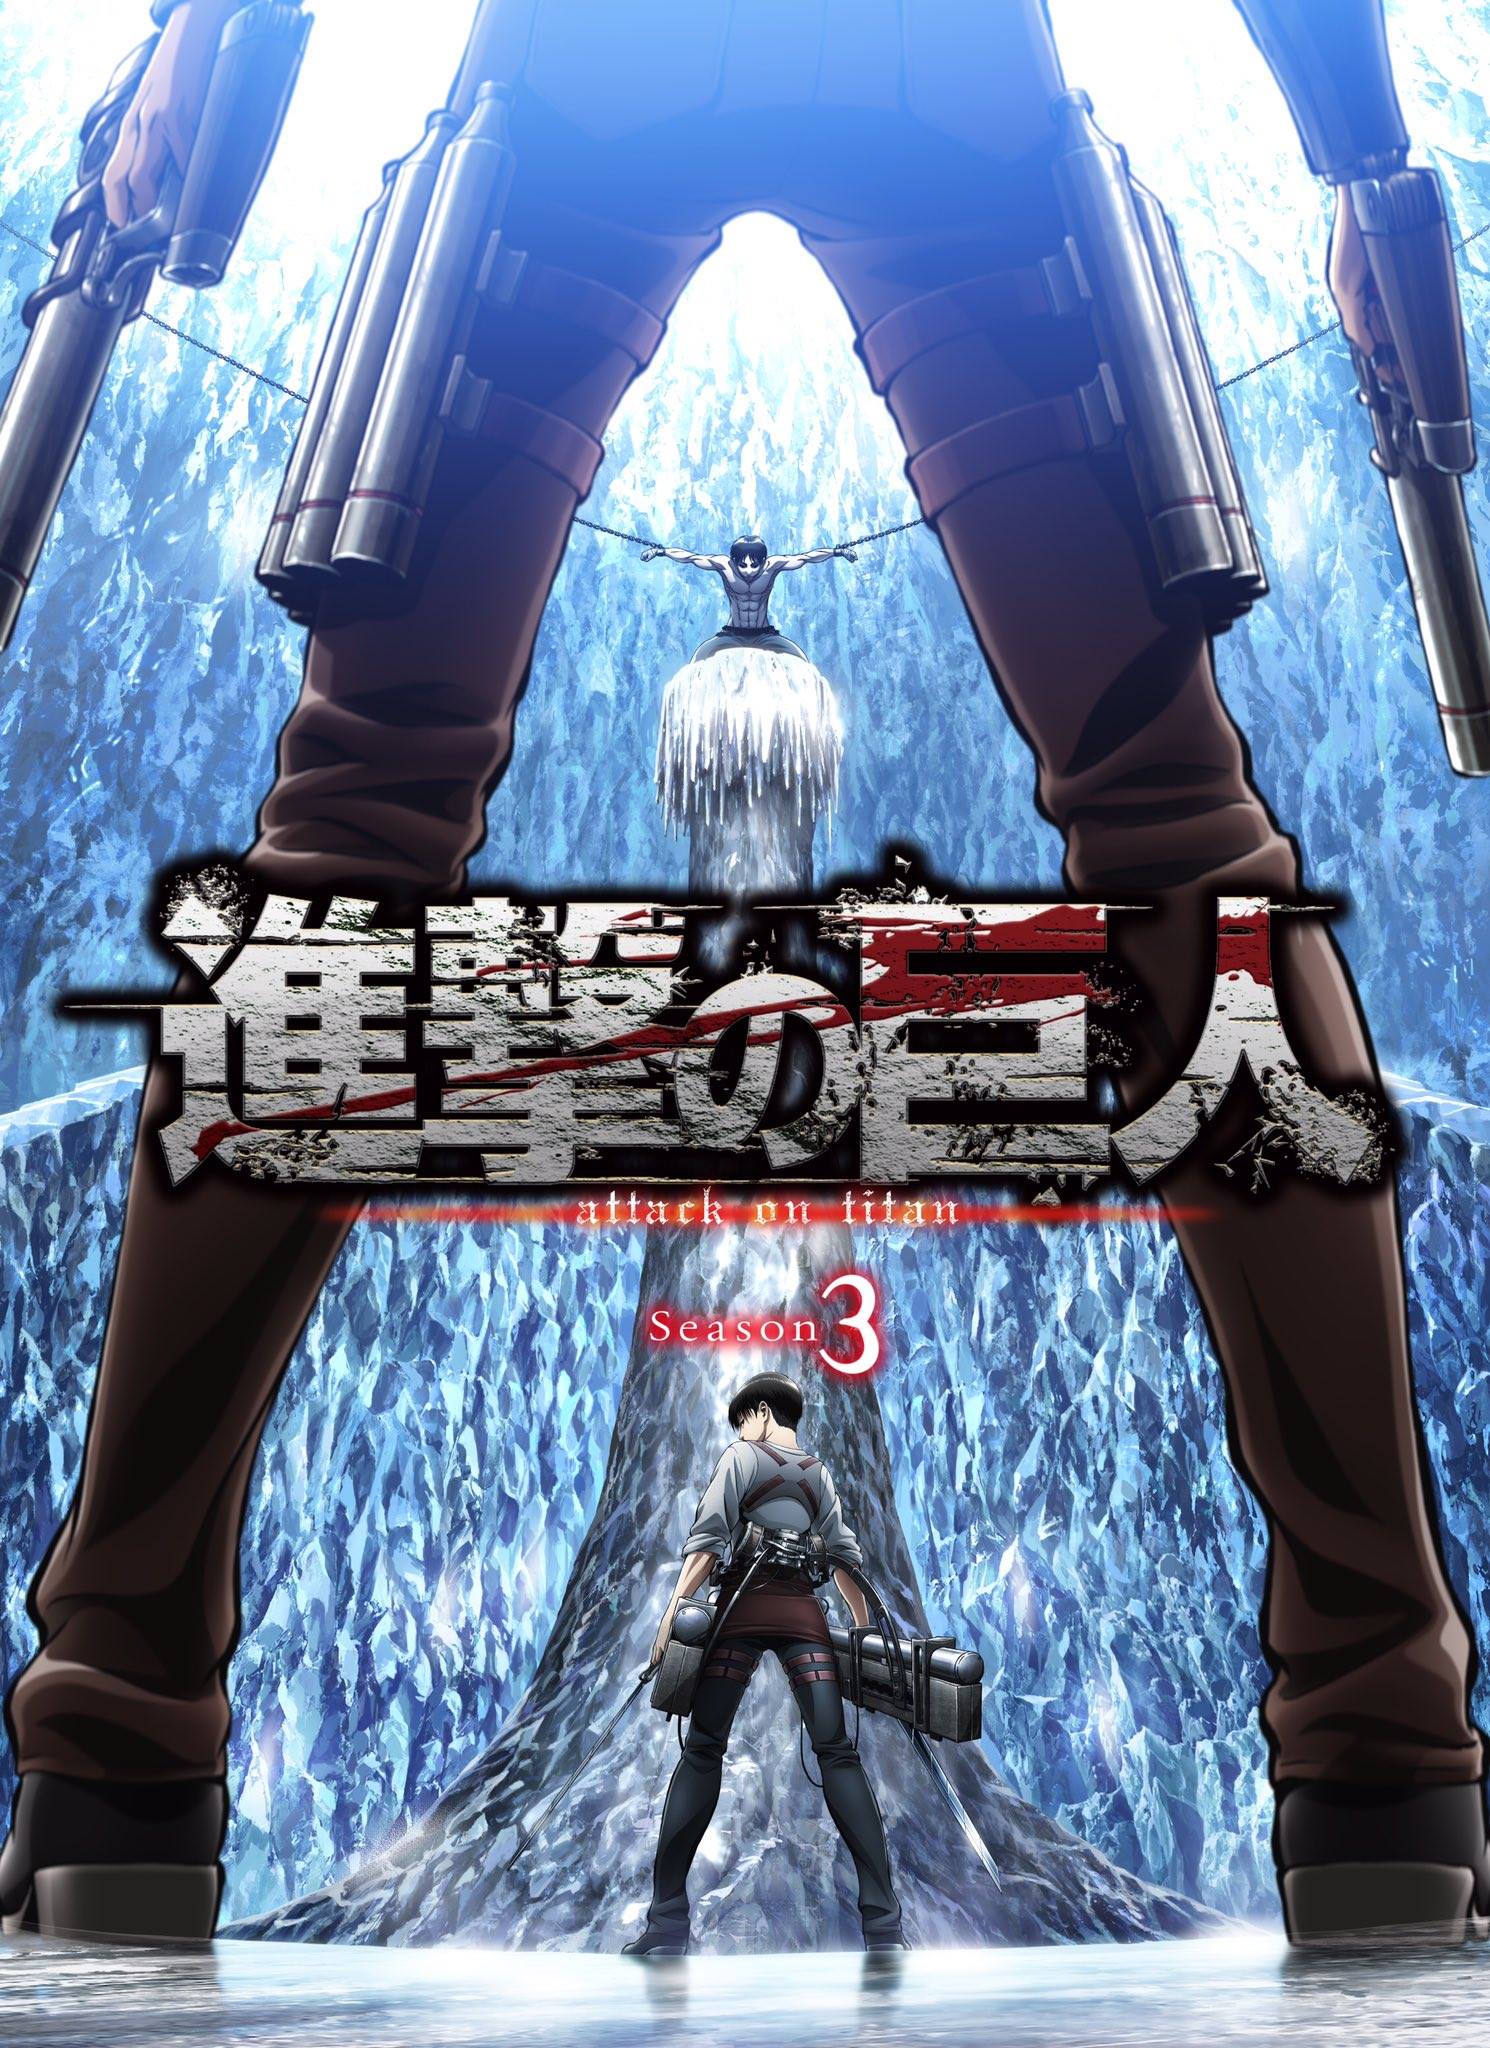 Attack on Titan Wiki on X: Today at Anime Expo Attack on Titan Season 3  Episode 1 Premiere!  / X